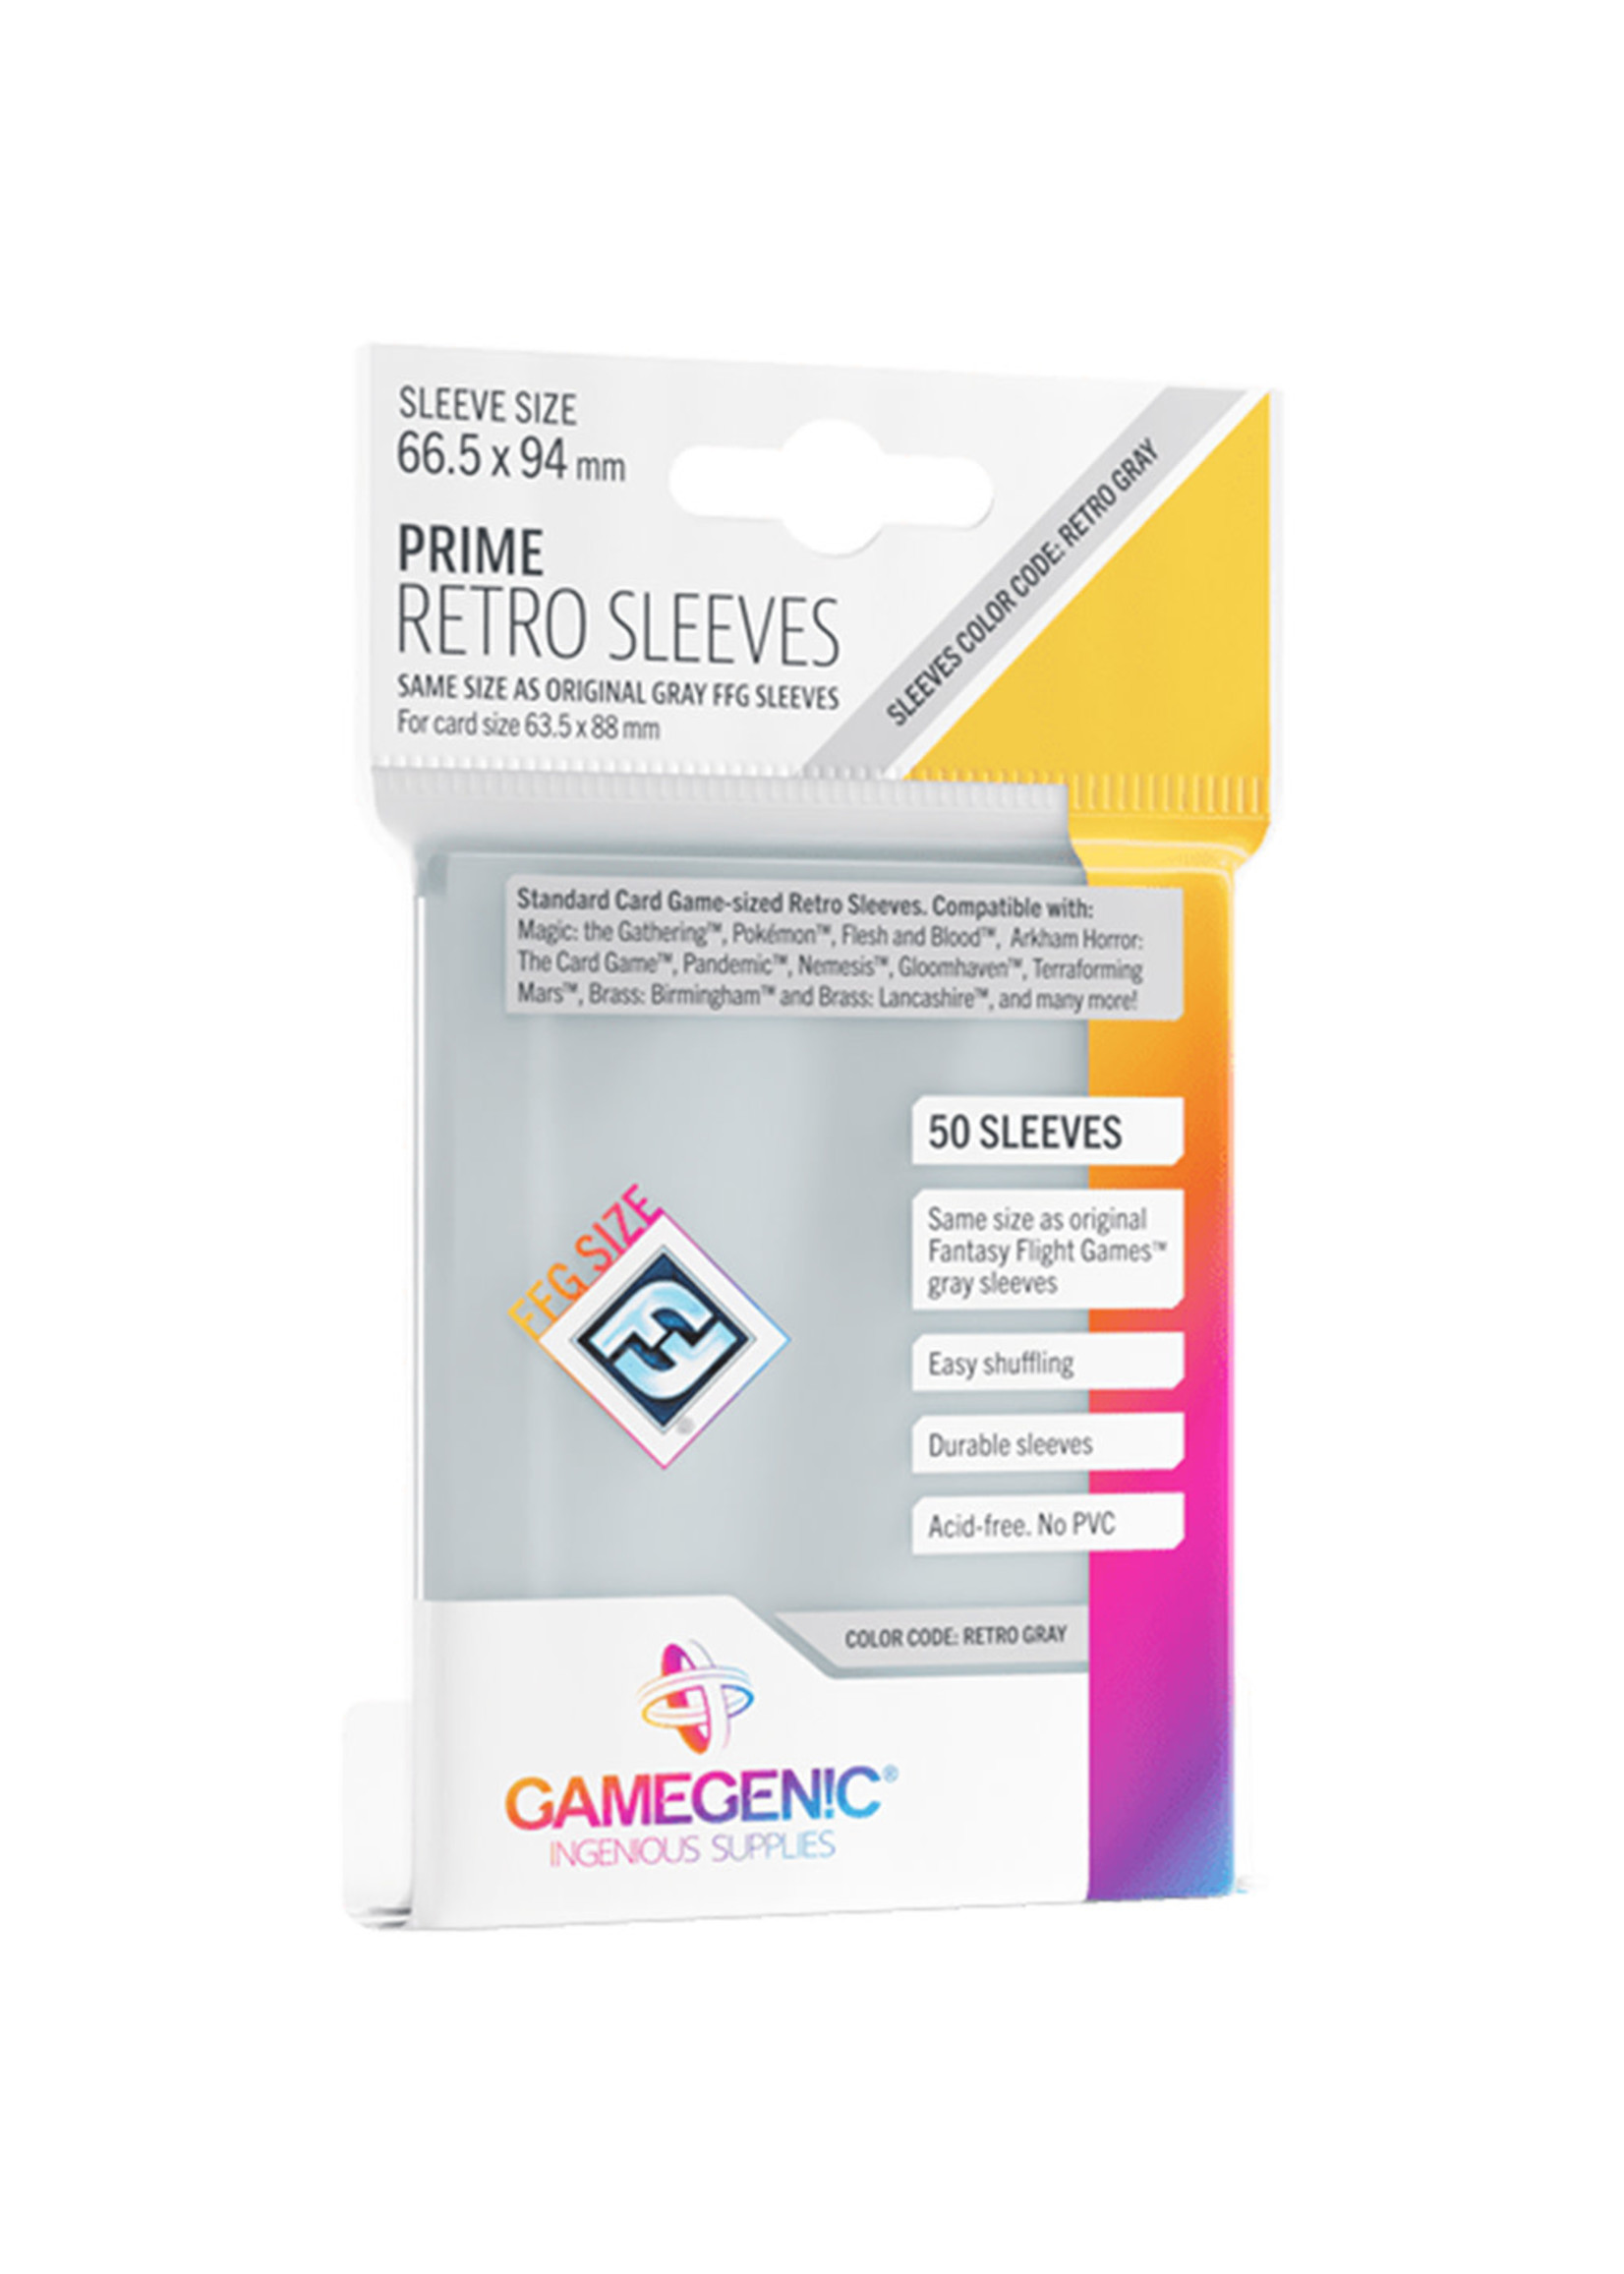 Gamegenic PRIME Retro Sleeves